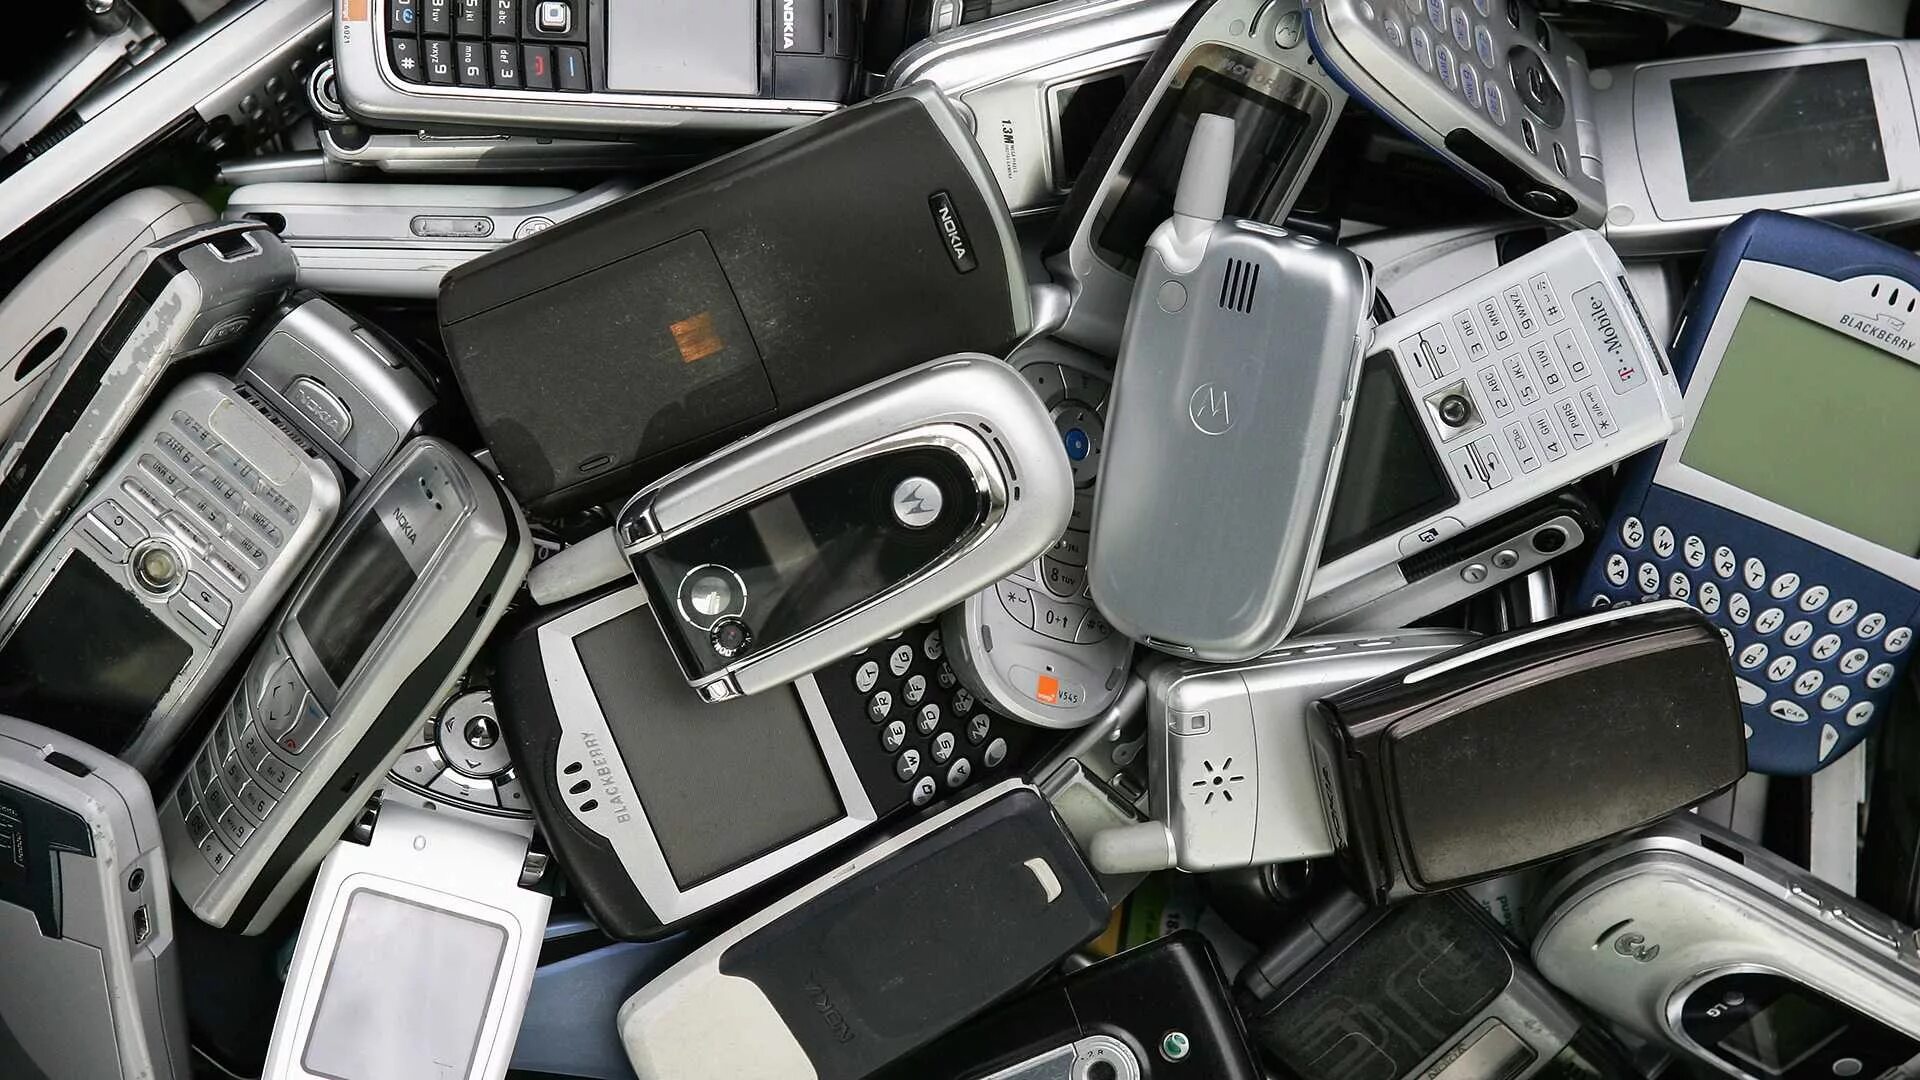 Включи много телефон. Много телефонов. Сотовые телефоны много. Куча смартфонов. Куча старых смартфонов.